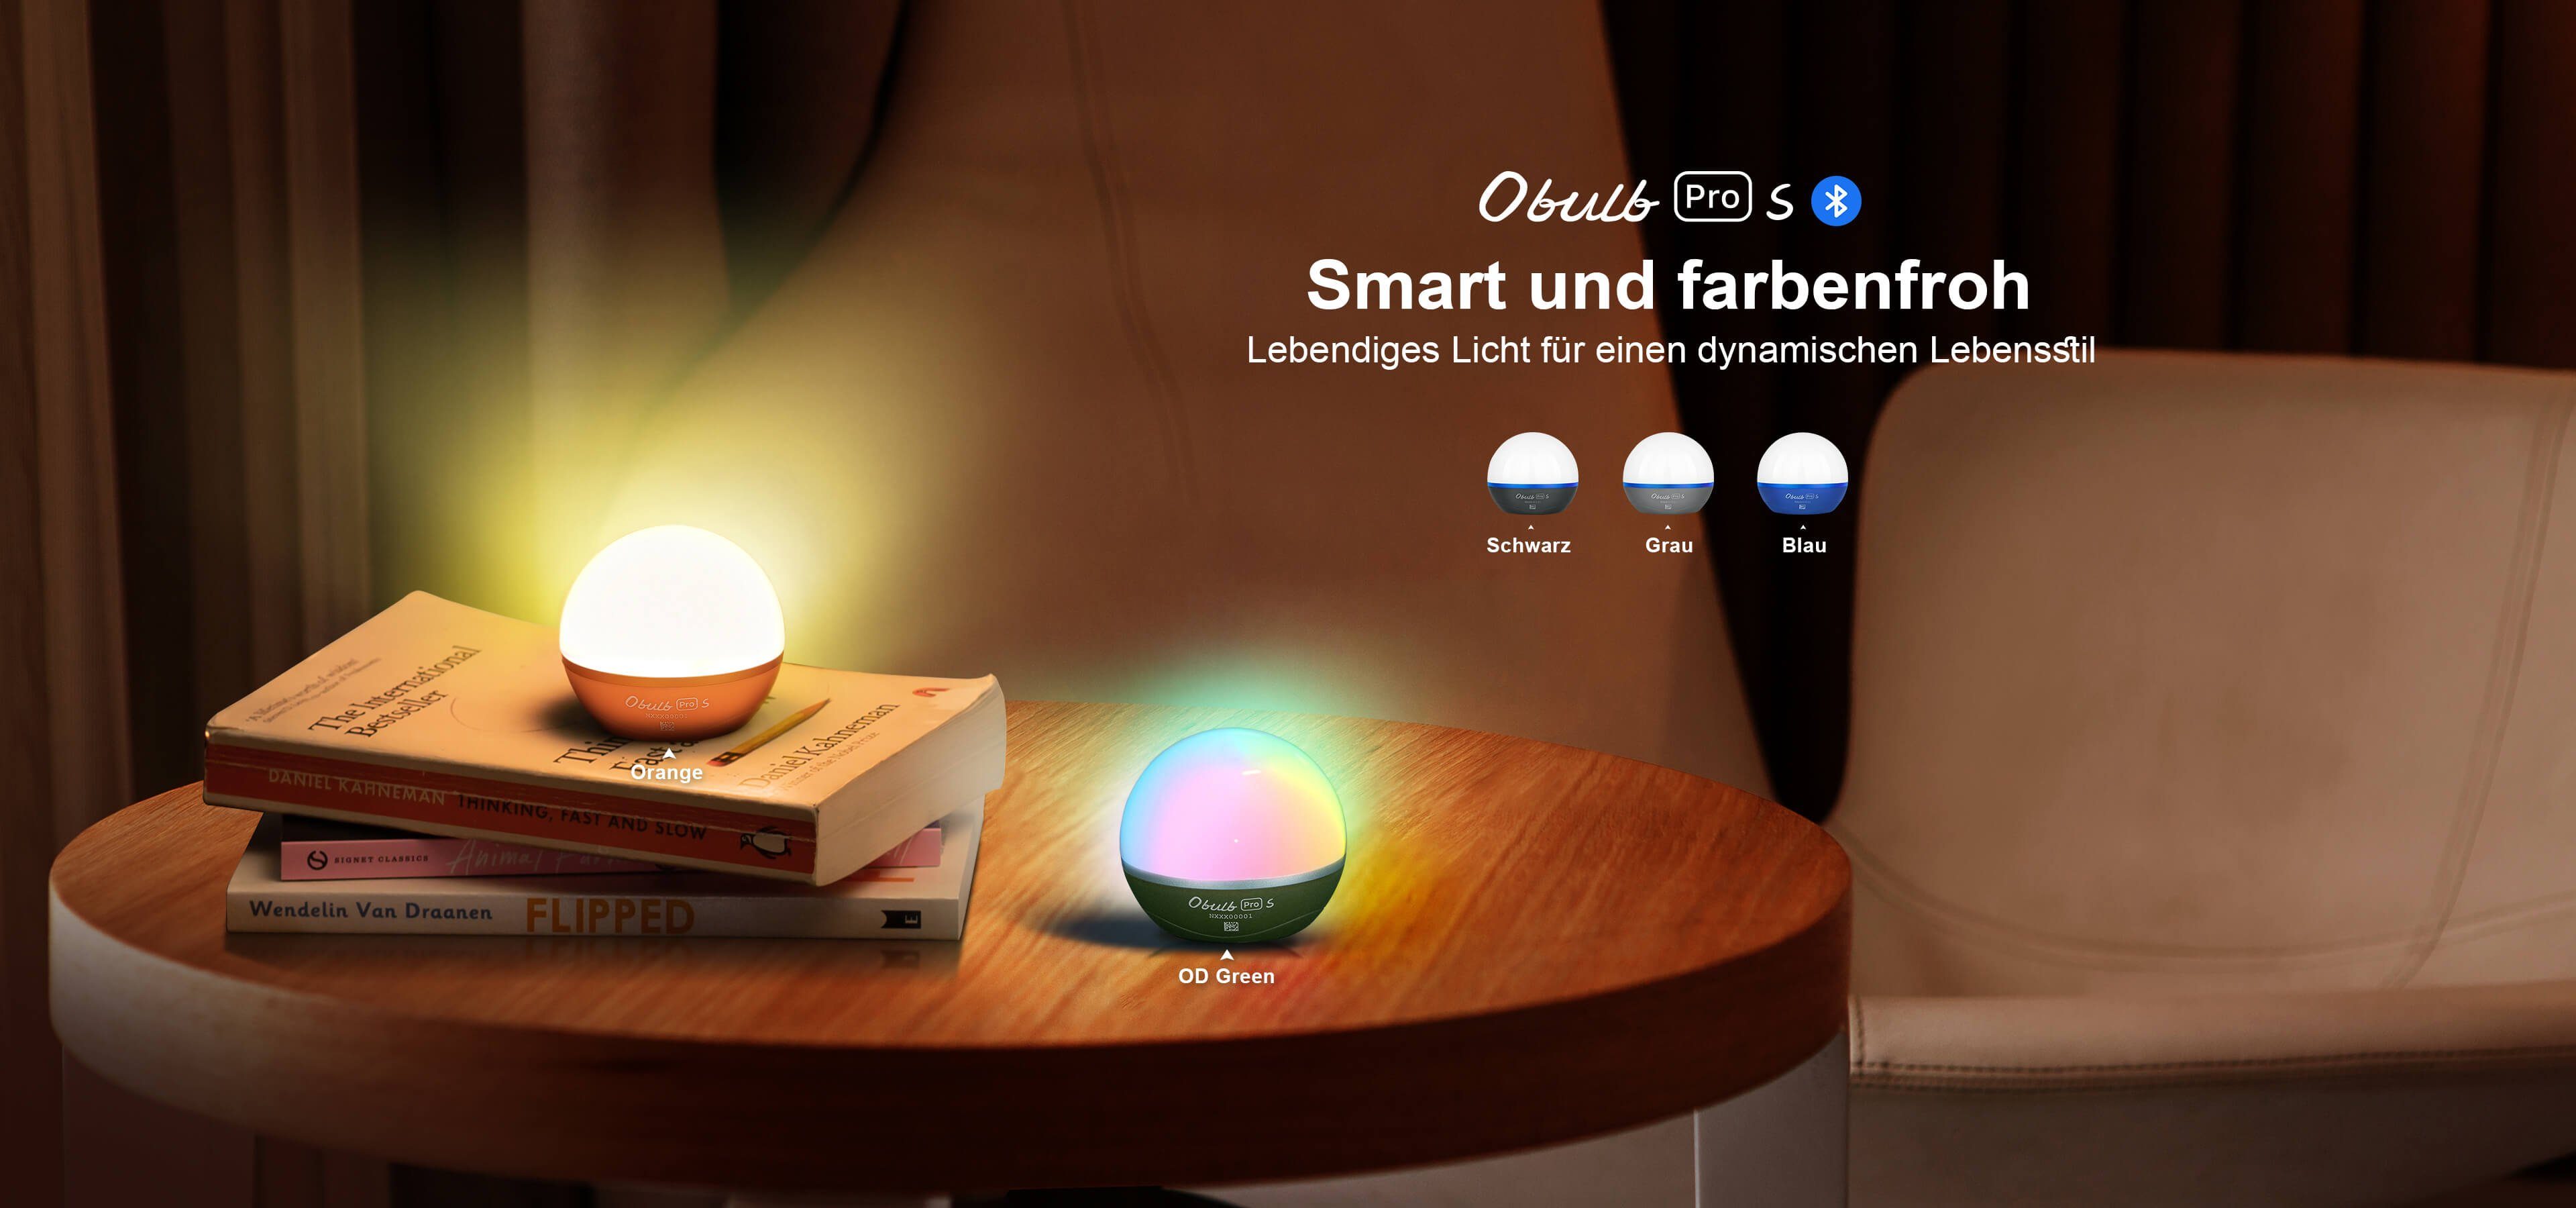 Pro Dynamische Obulb OLIGHT Farbenfrohe und S mit Lichtkugel Orange Nachtlicht App-Steuerung